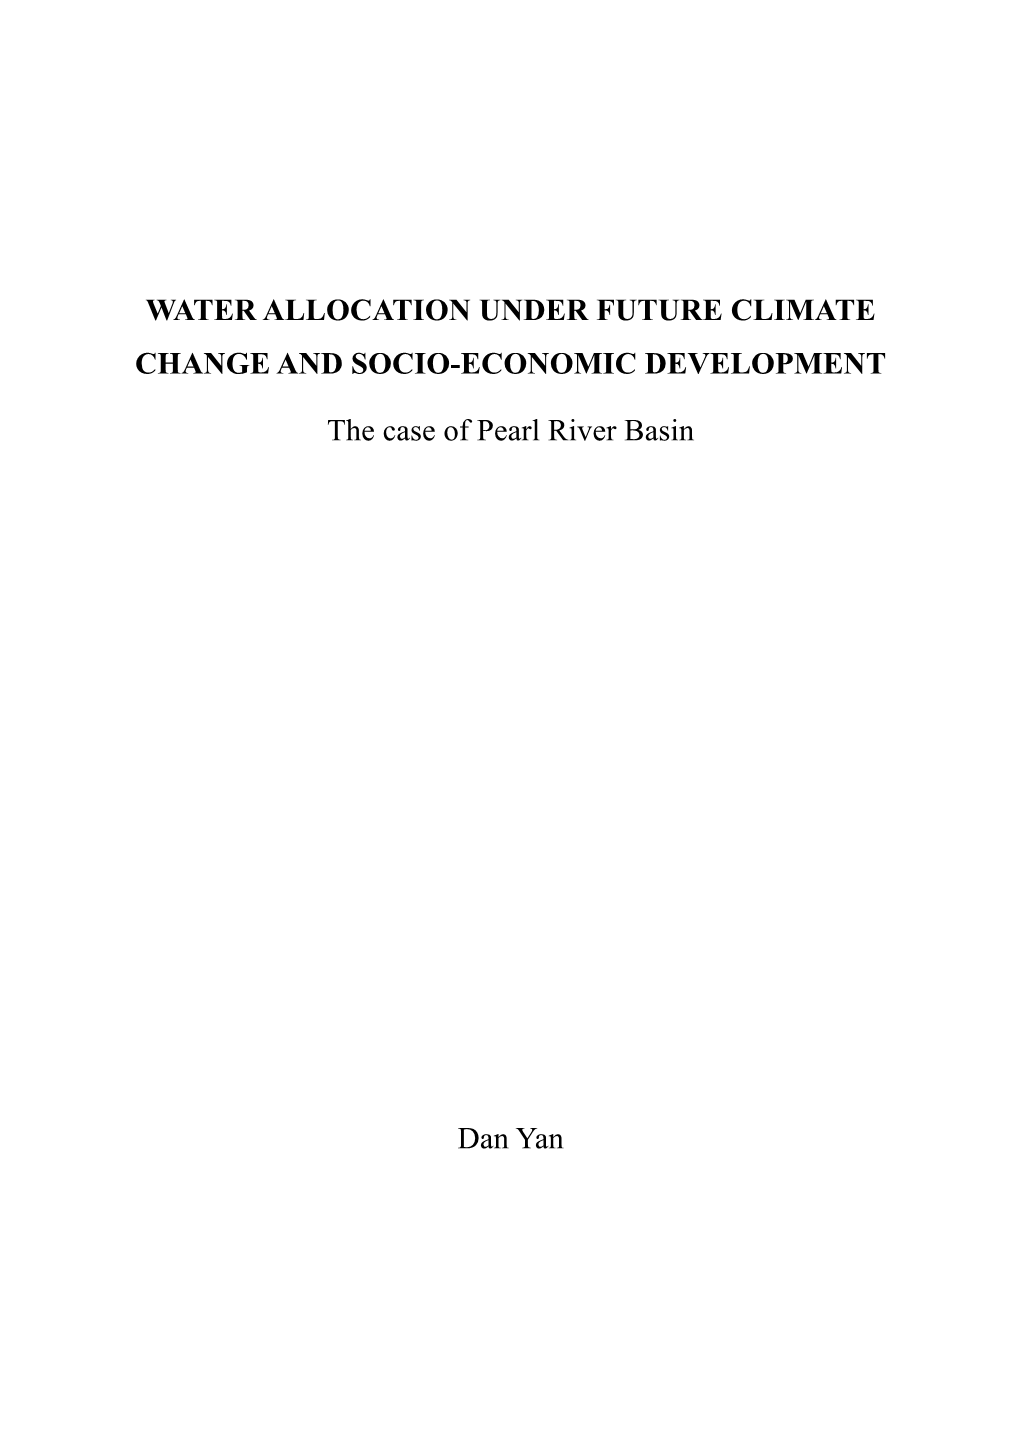 Water Allocation Under Future Climate Change and Socio-Economic Development